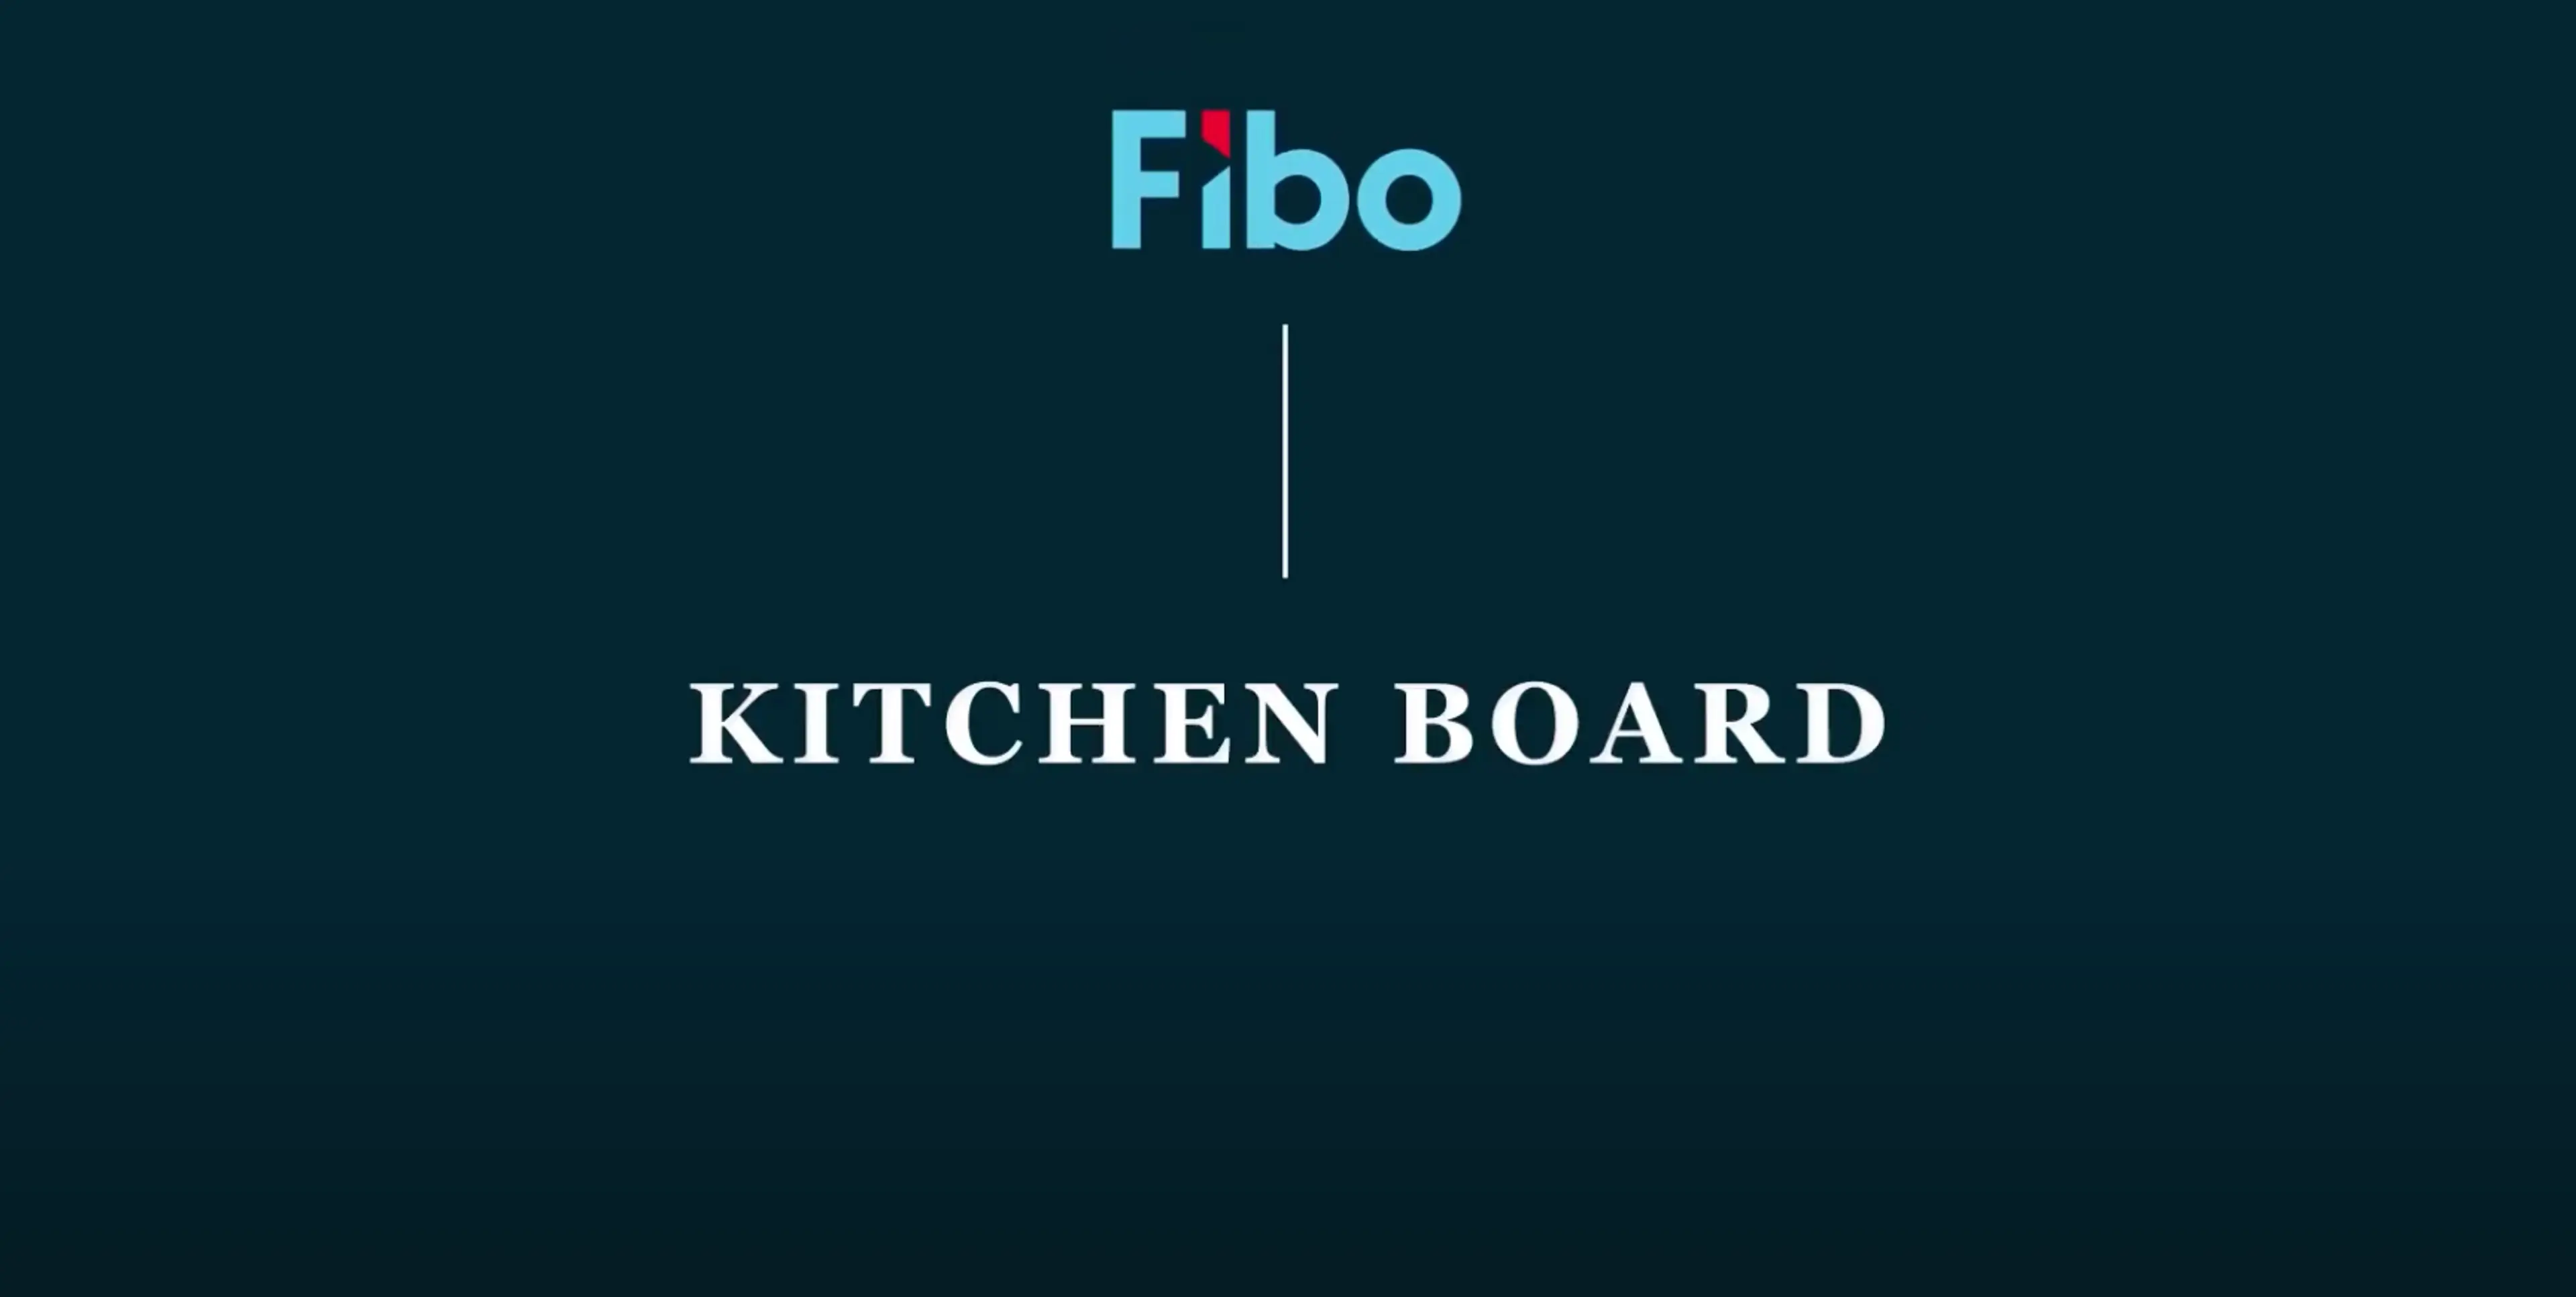 Skjermbilde av monteringsvideo for Fibo Kitchen board, veggplater til kjøkken.